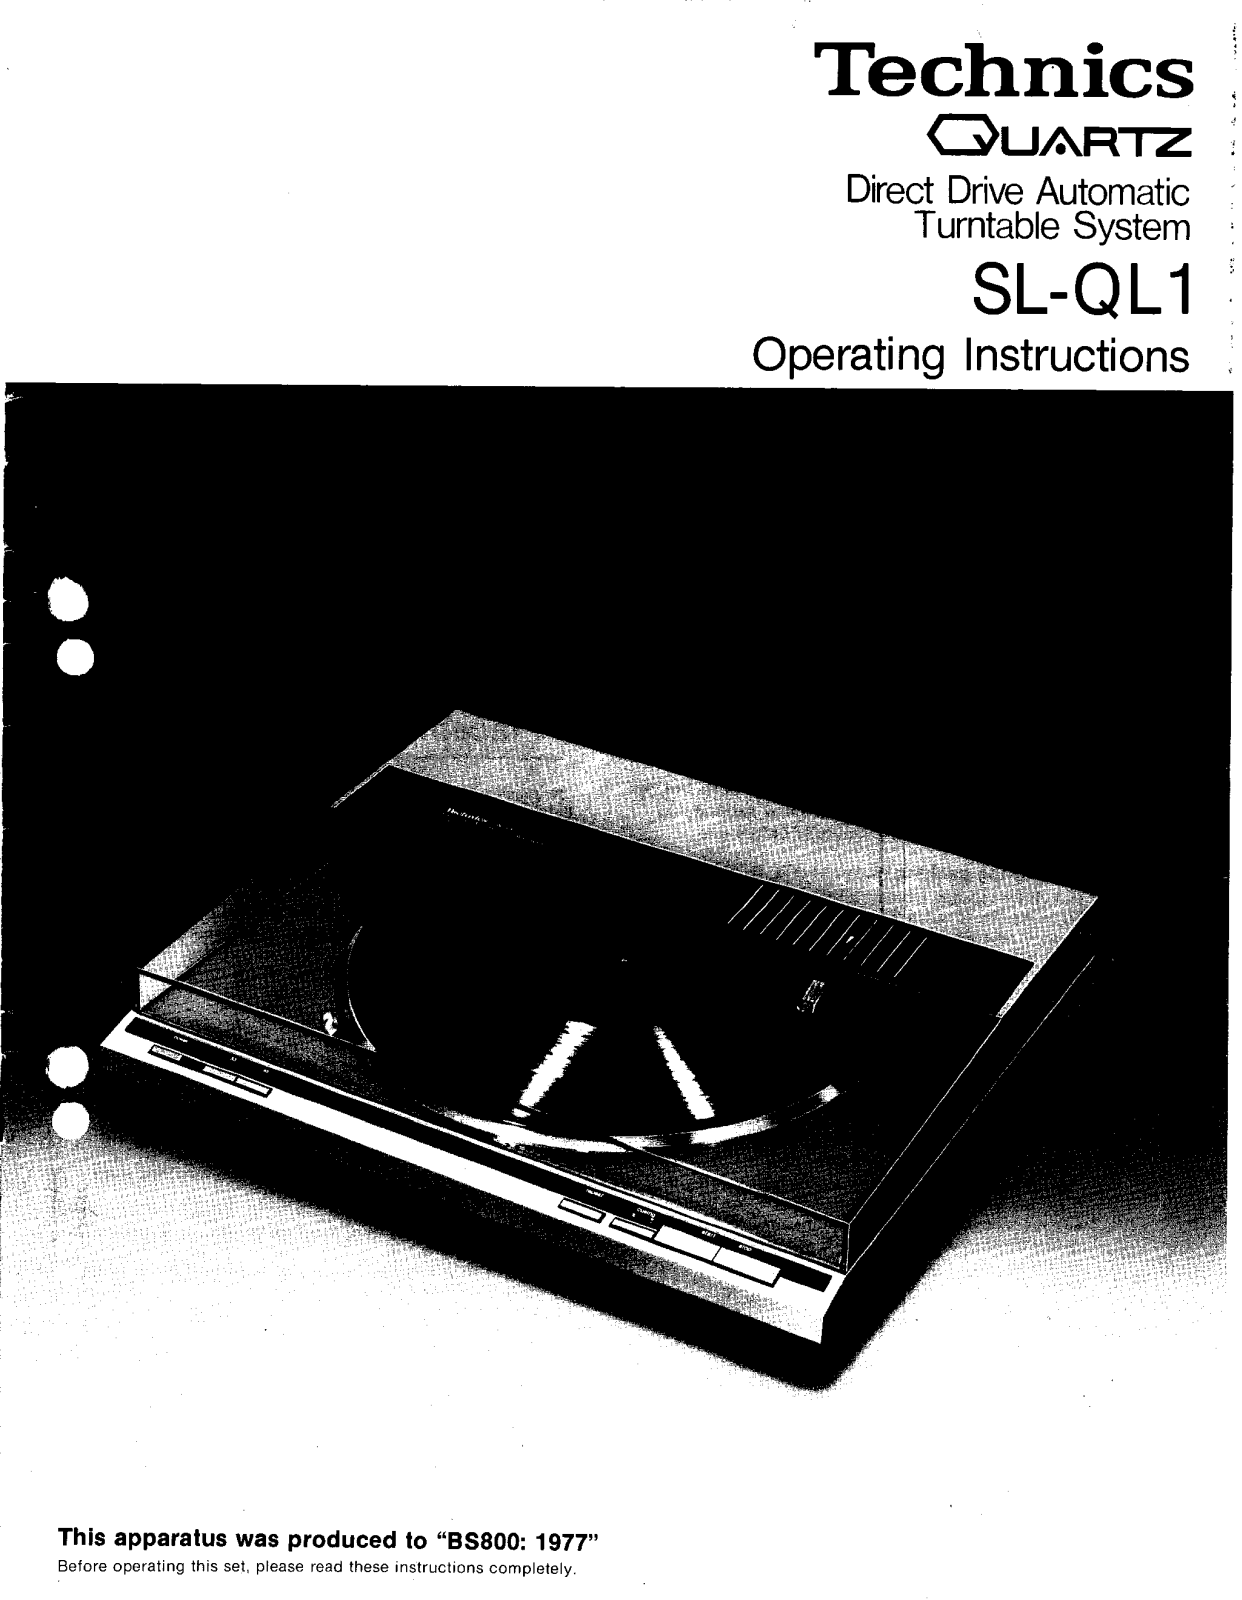 Panasonic SL-Q1 User Manual